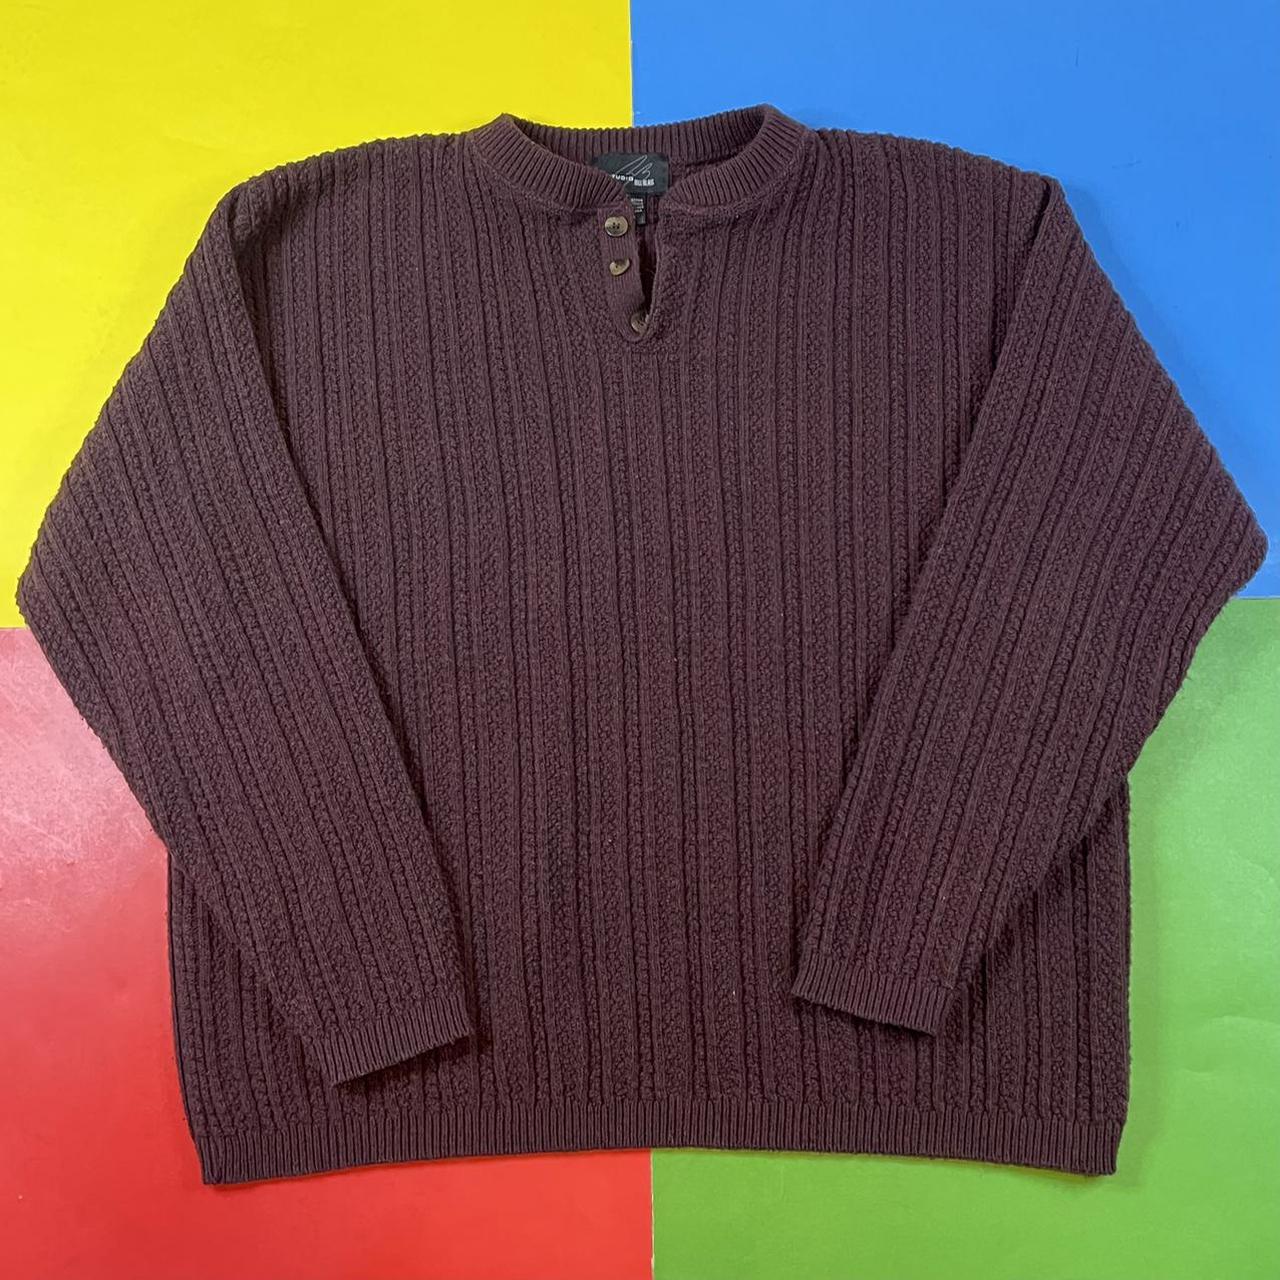 Vintage knit sweater. 90’s Studio by Bill Blass... - Depop